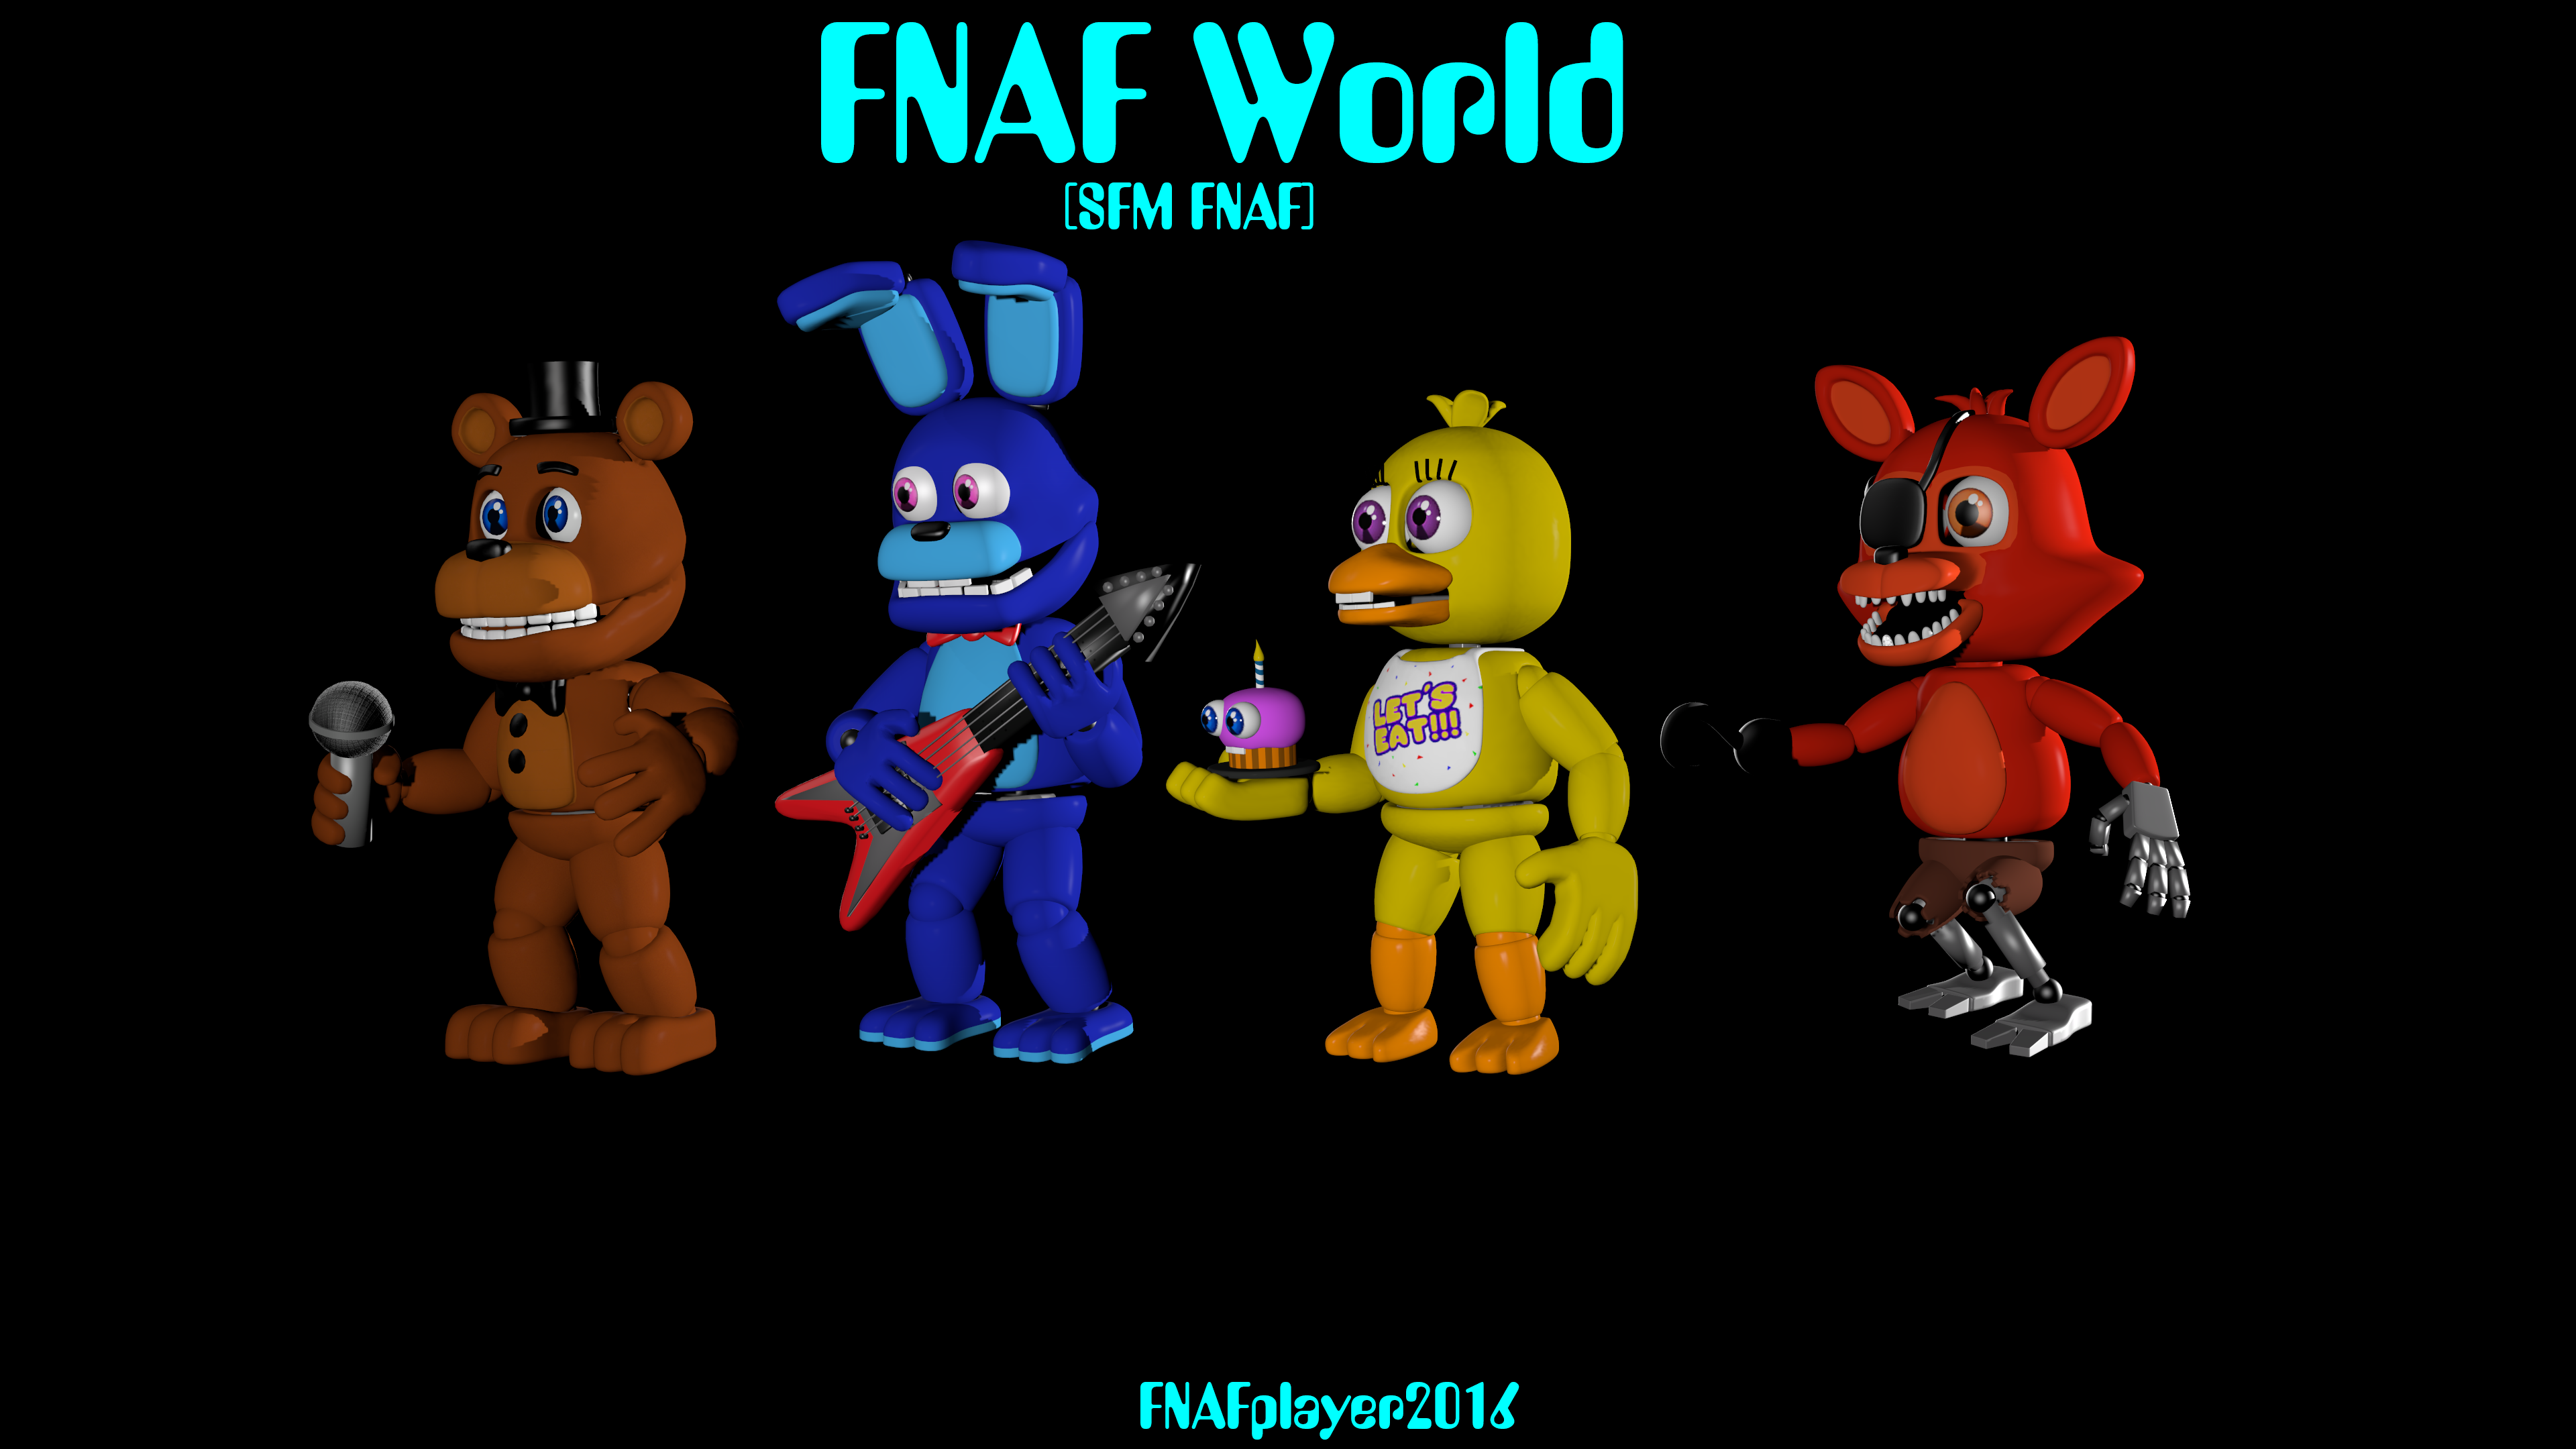 Фнаф ворлд на телефон. ФНАФ ворлд. FNAF World лого. ФНАФ ворлд персонажи. Офлайн ФНАФ.